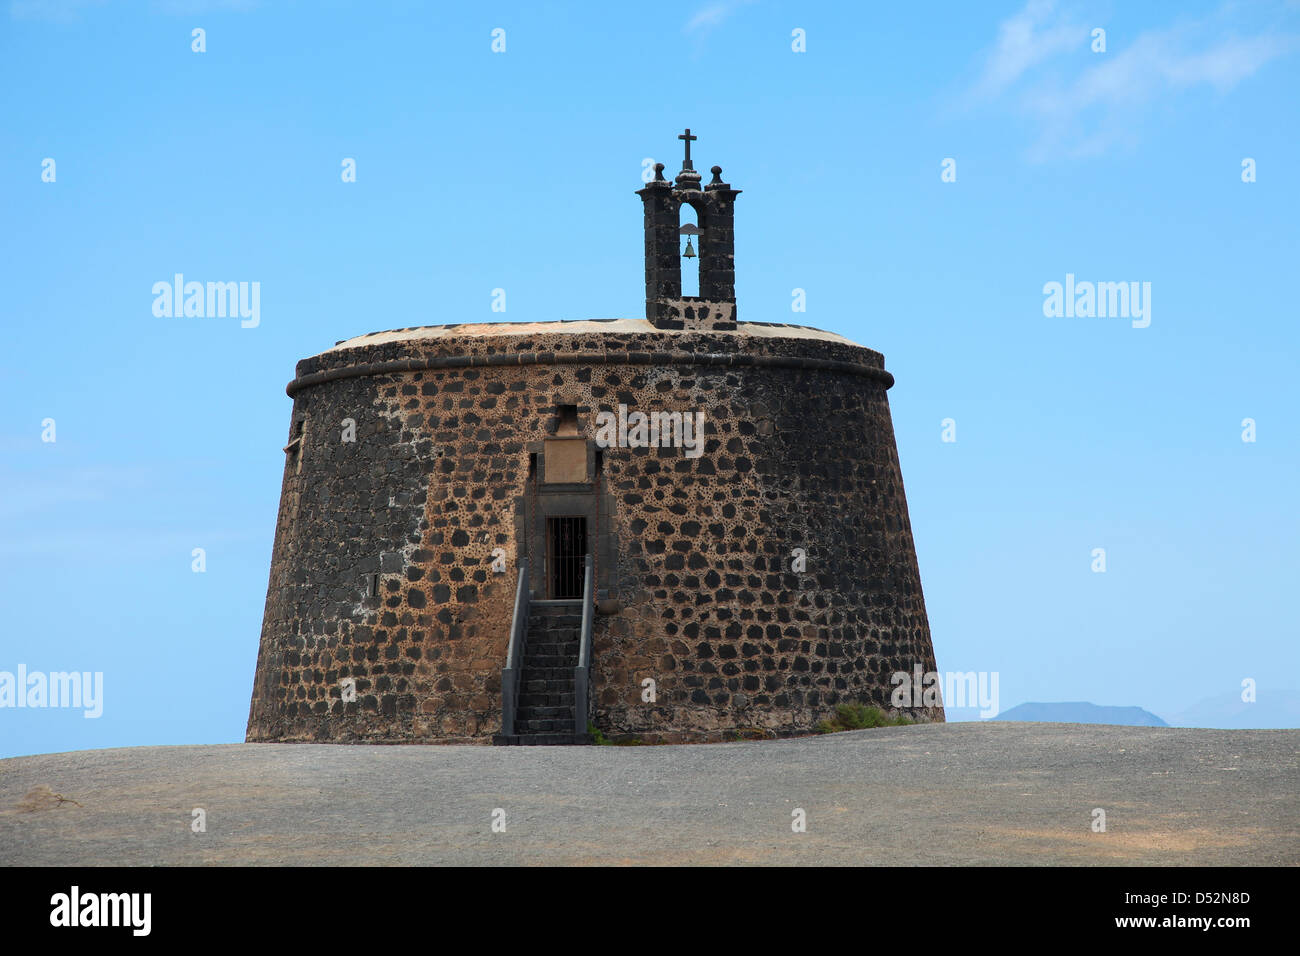 Lanzarote, Castillo de Las Coloradas on Cape Aguila in Playa Blanca. Stock Photo